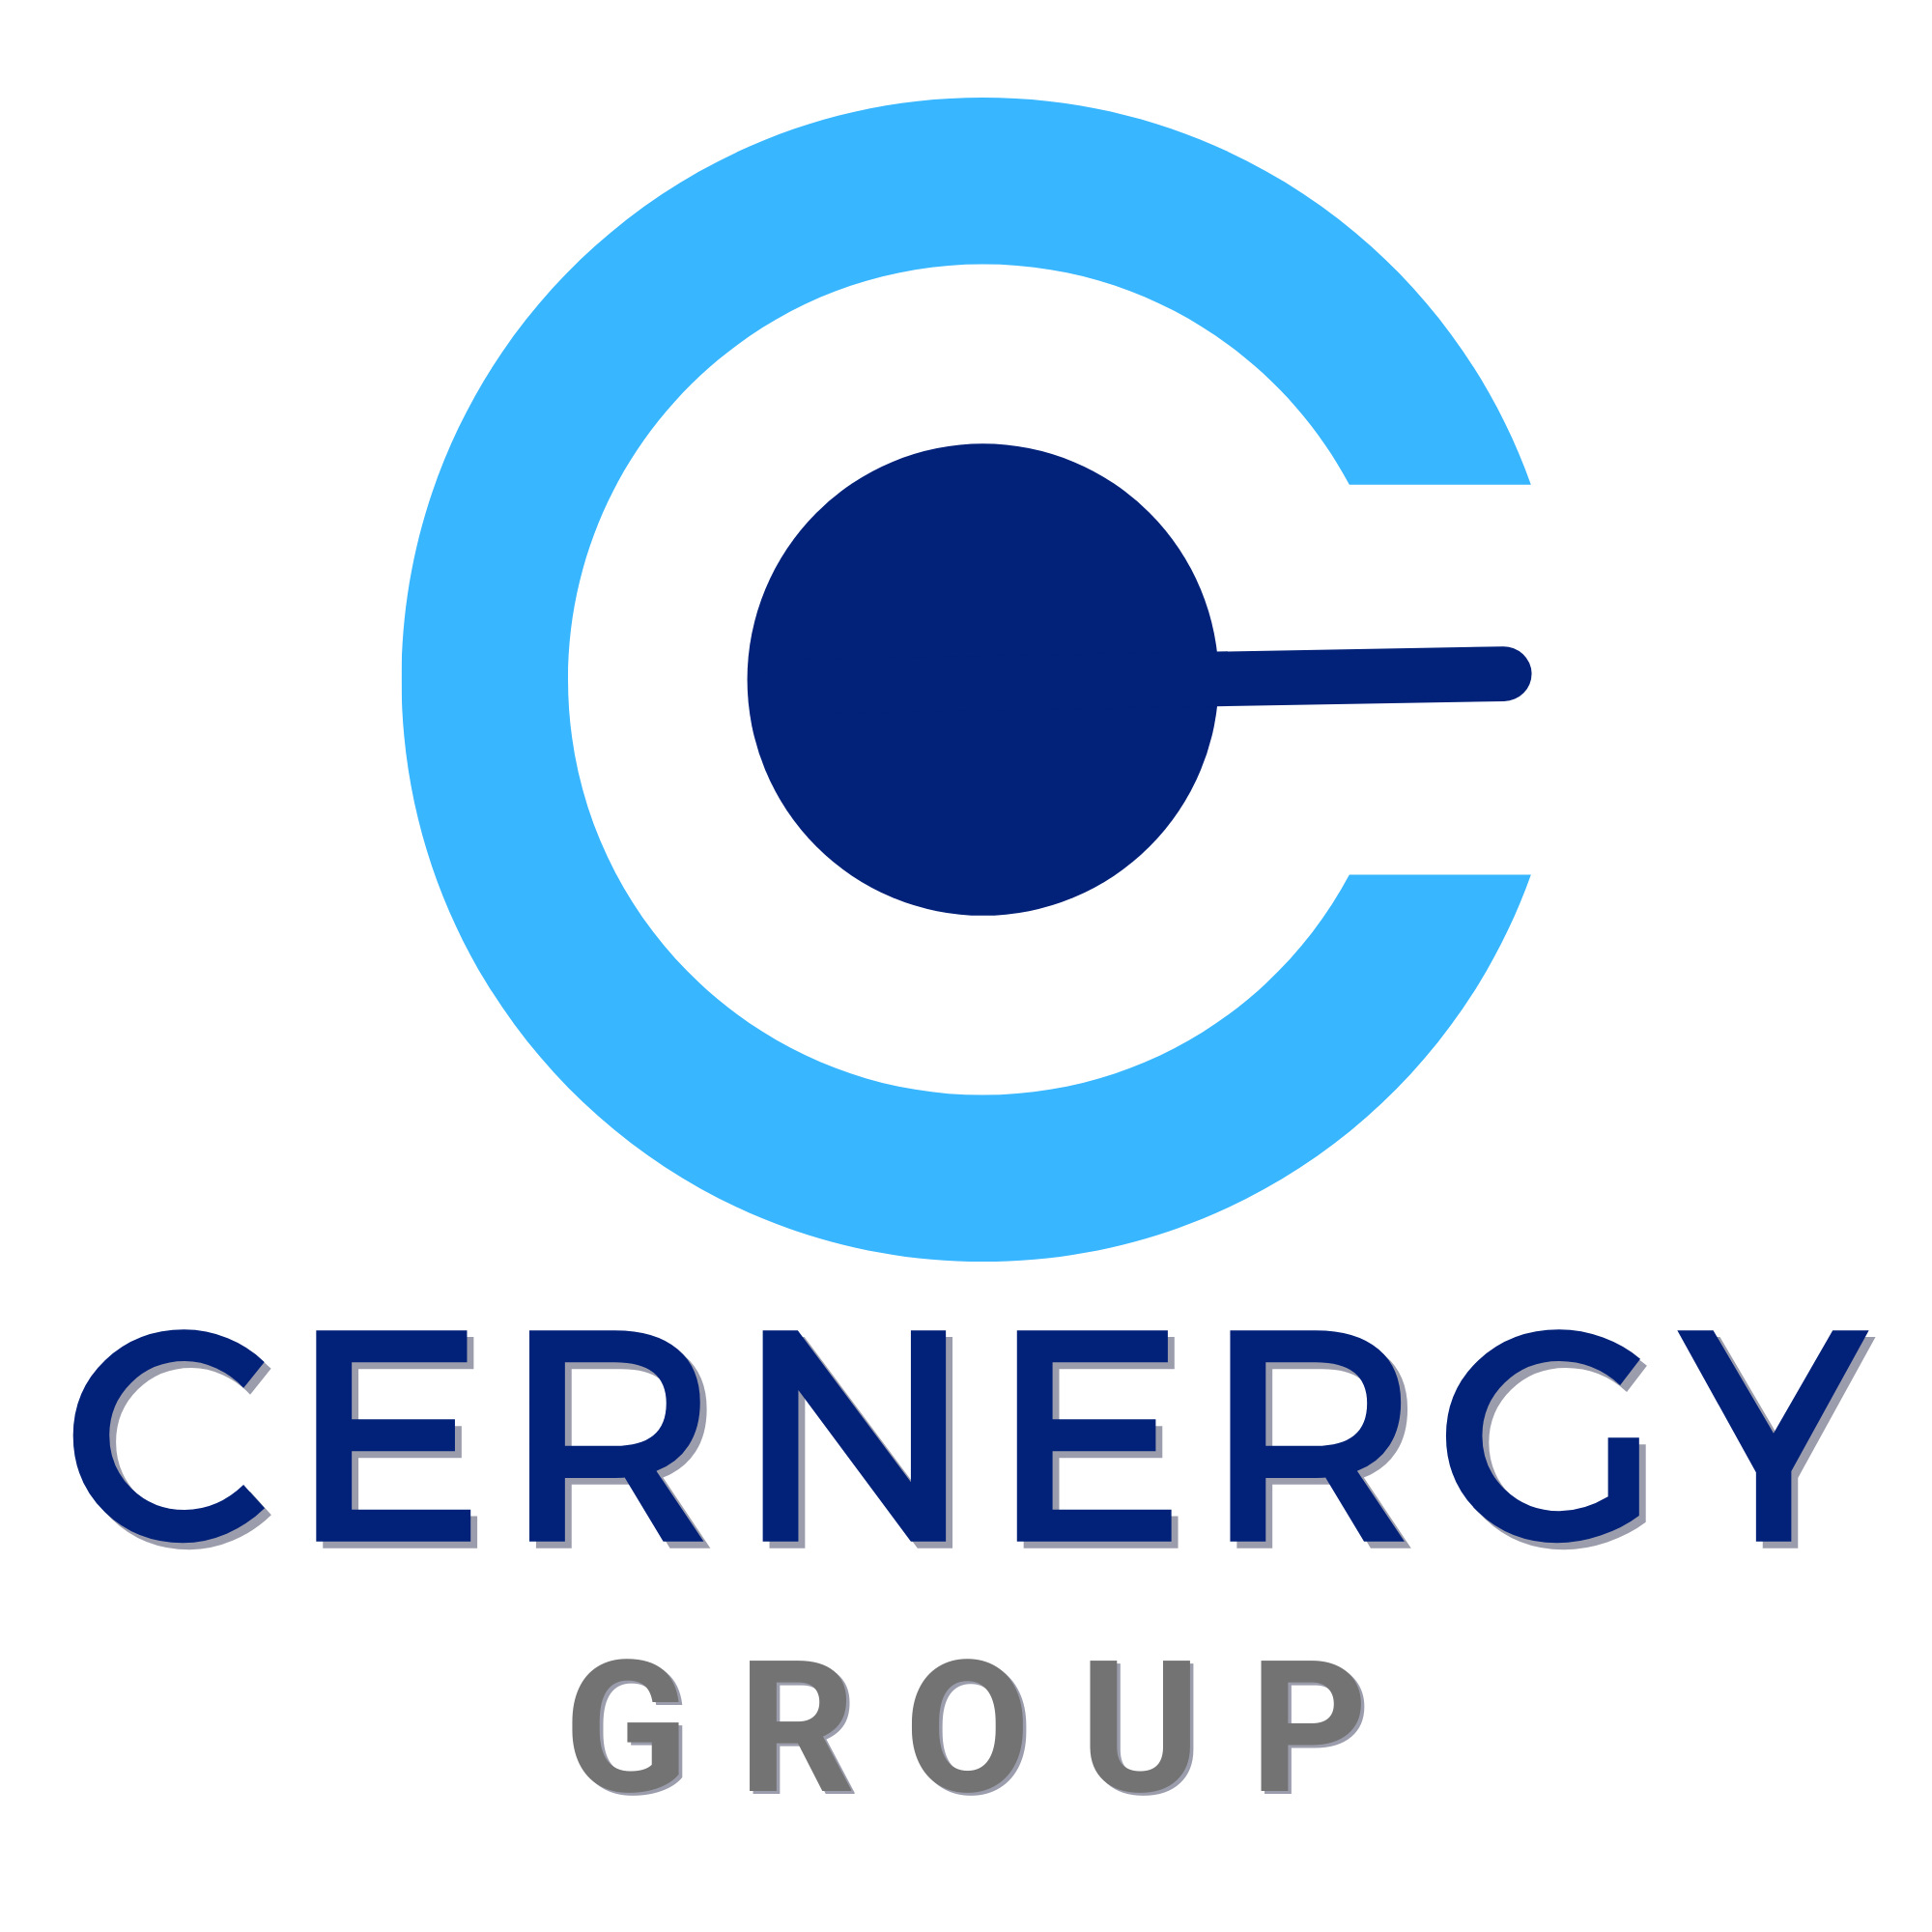 Cernergy Group